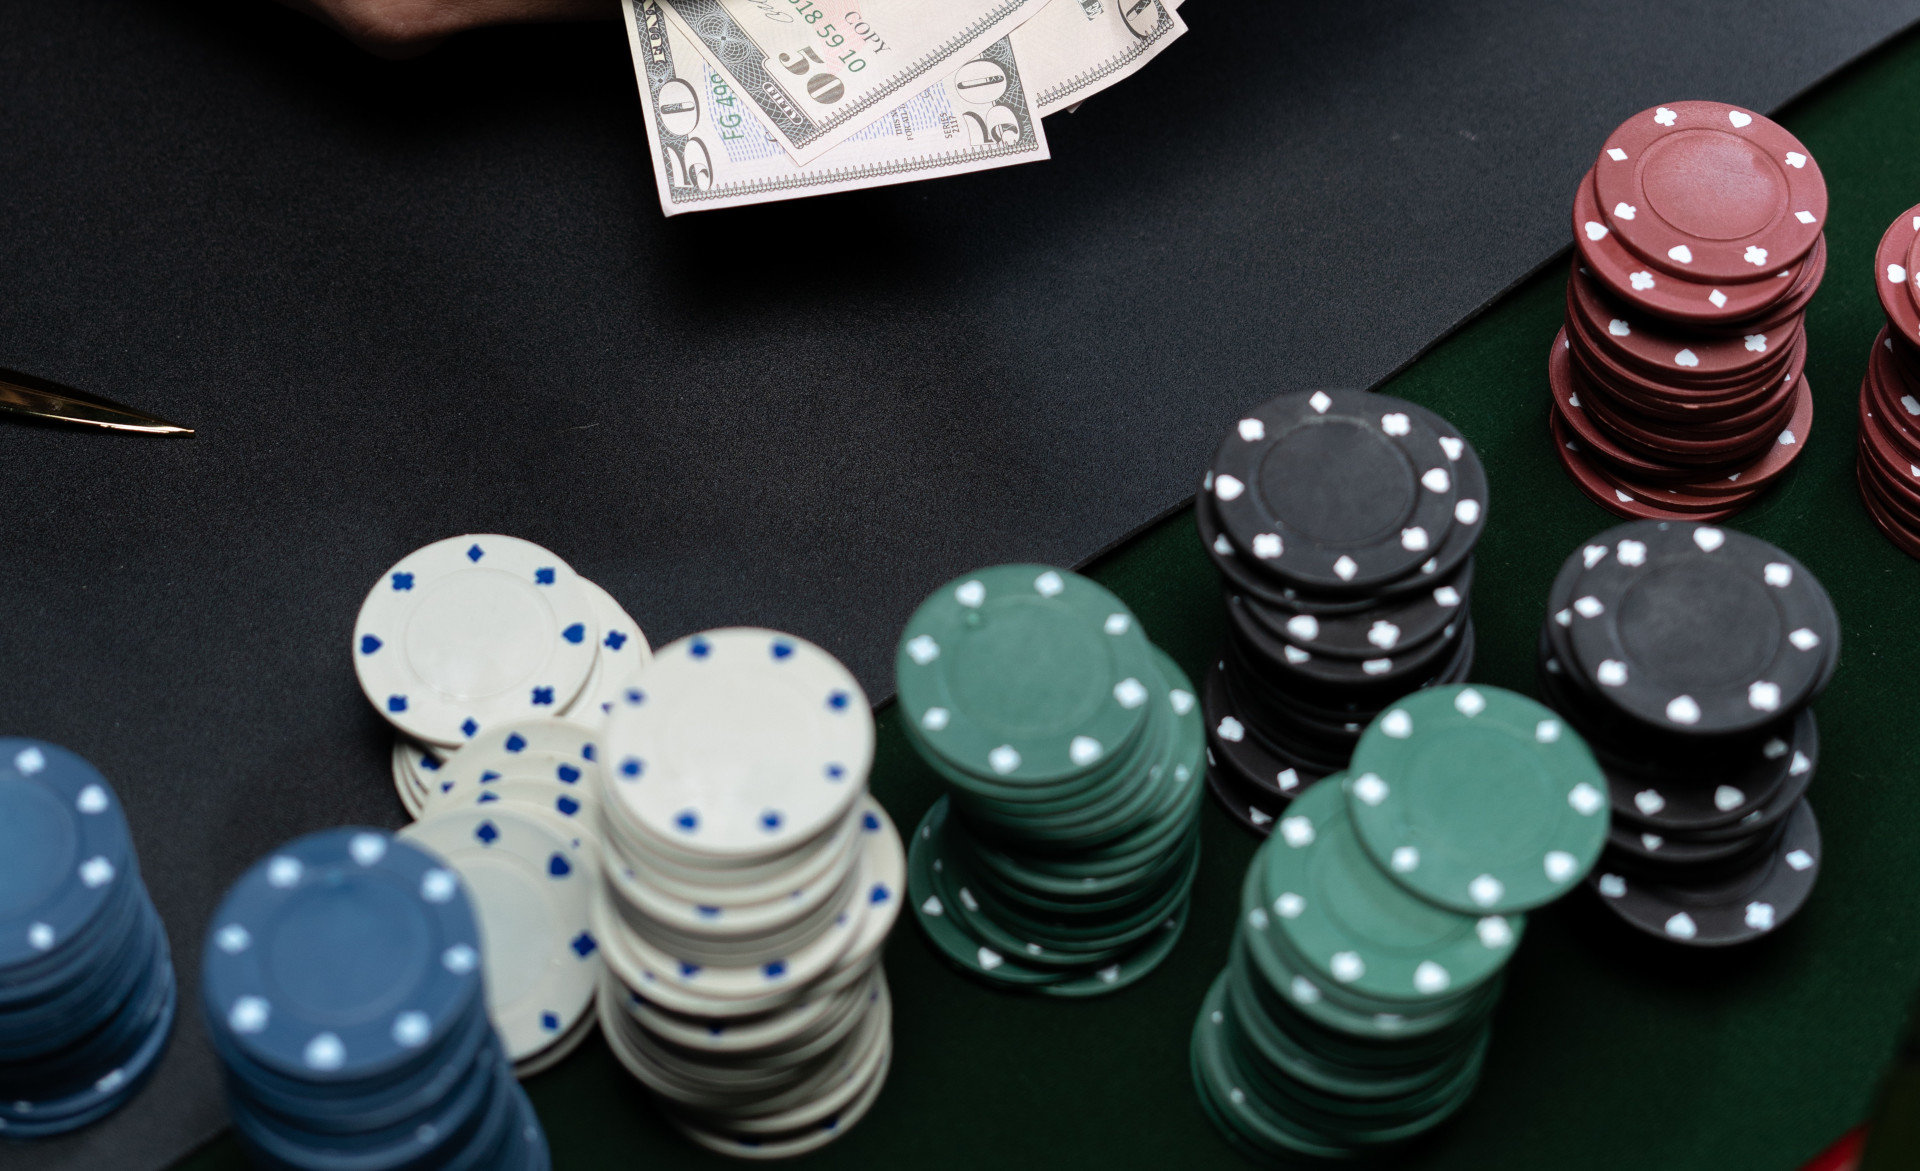 Η μπλόφα του αιώνα που άλλαξε για πάντα το πόκερ